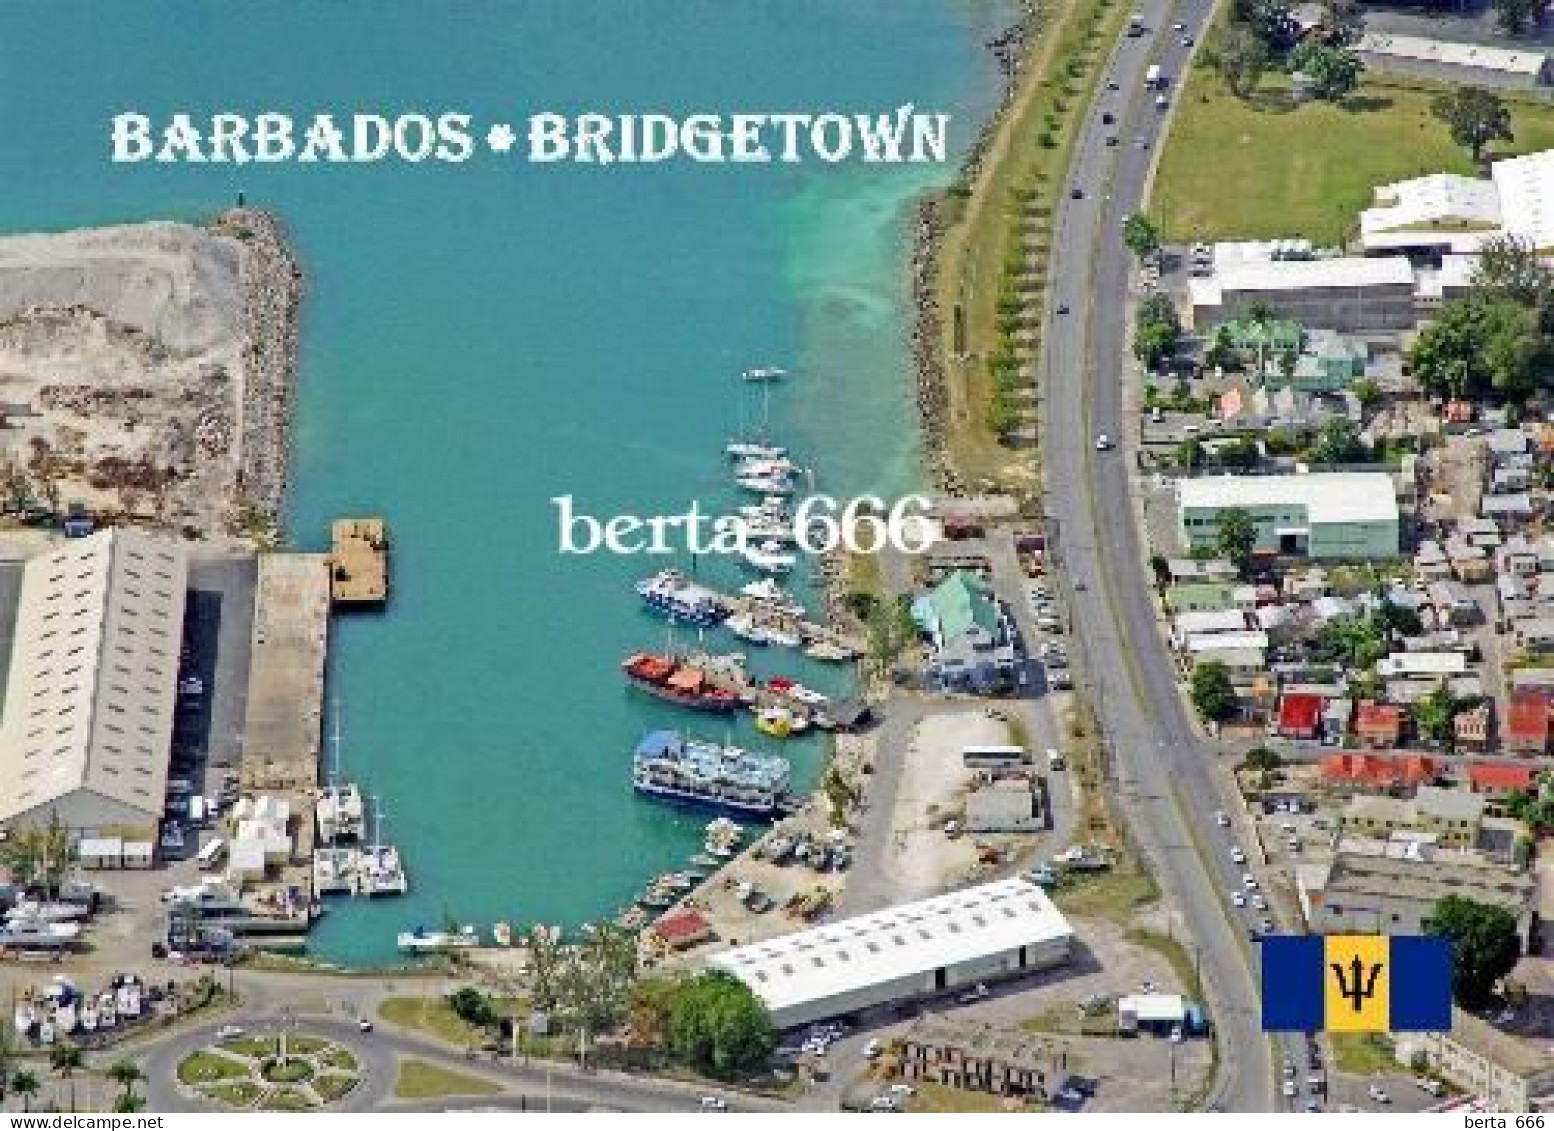 Barbados Bridgetown New Postcard - Barbados